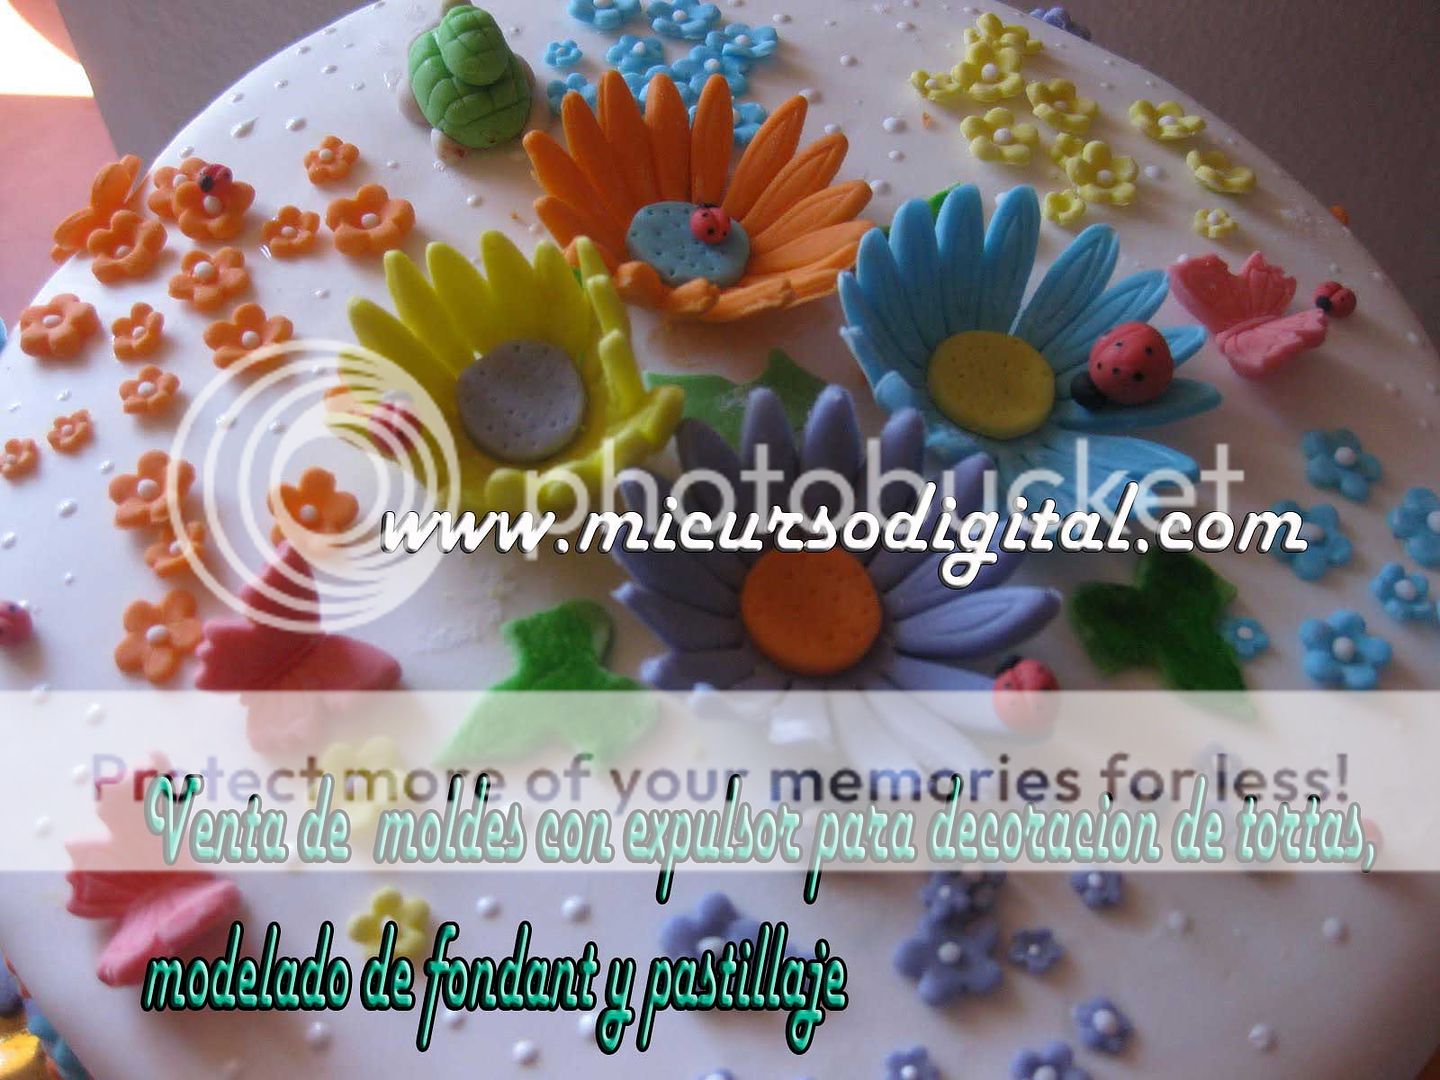 molde-con-expulsor-girasol-cupcakes-decoracion-de-tartas-molde-plastico-fondant